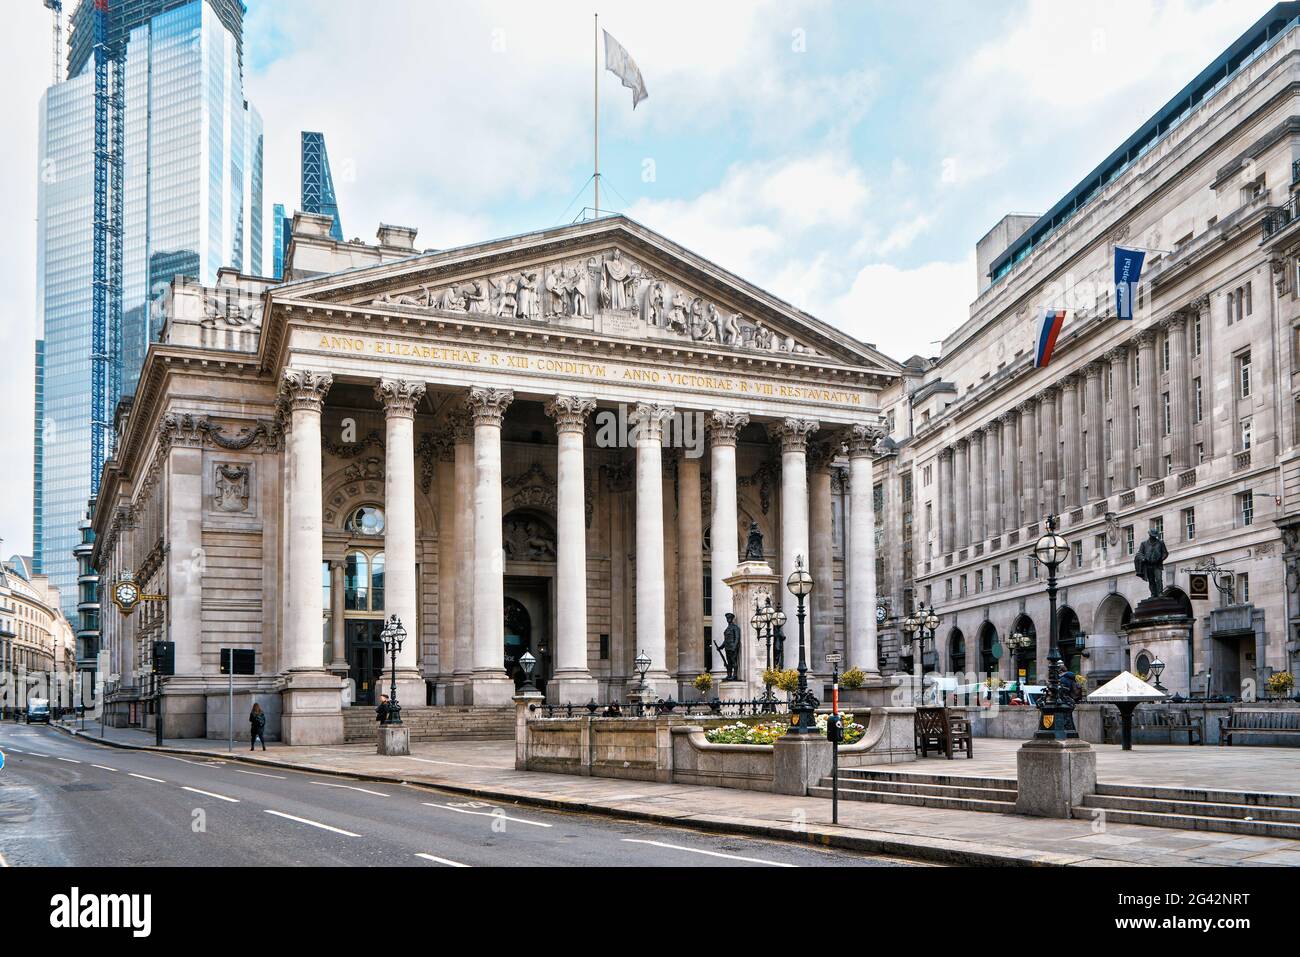 Londra, Regno Unito - 02 febbraio 2019: Cancello anteriore del Royal Exchange vicino alla stazione della banca. E' centro di commercio, aperto per la prima volta nel 1571, attualmente housin Foto Stock